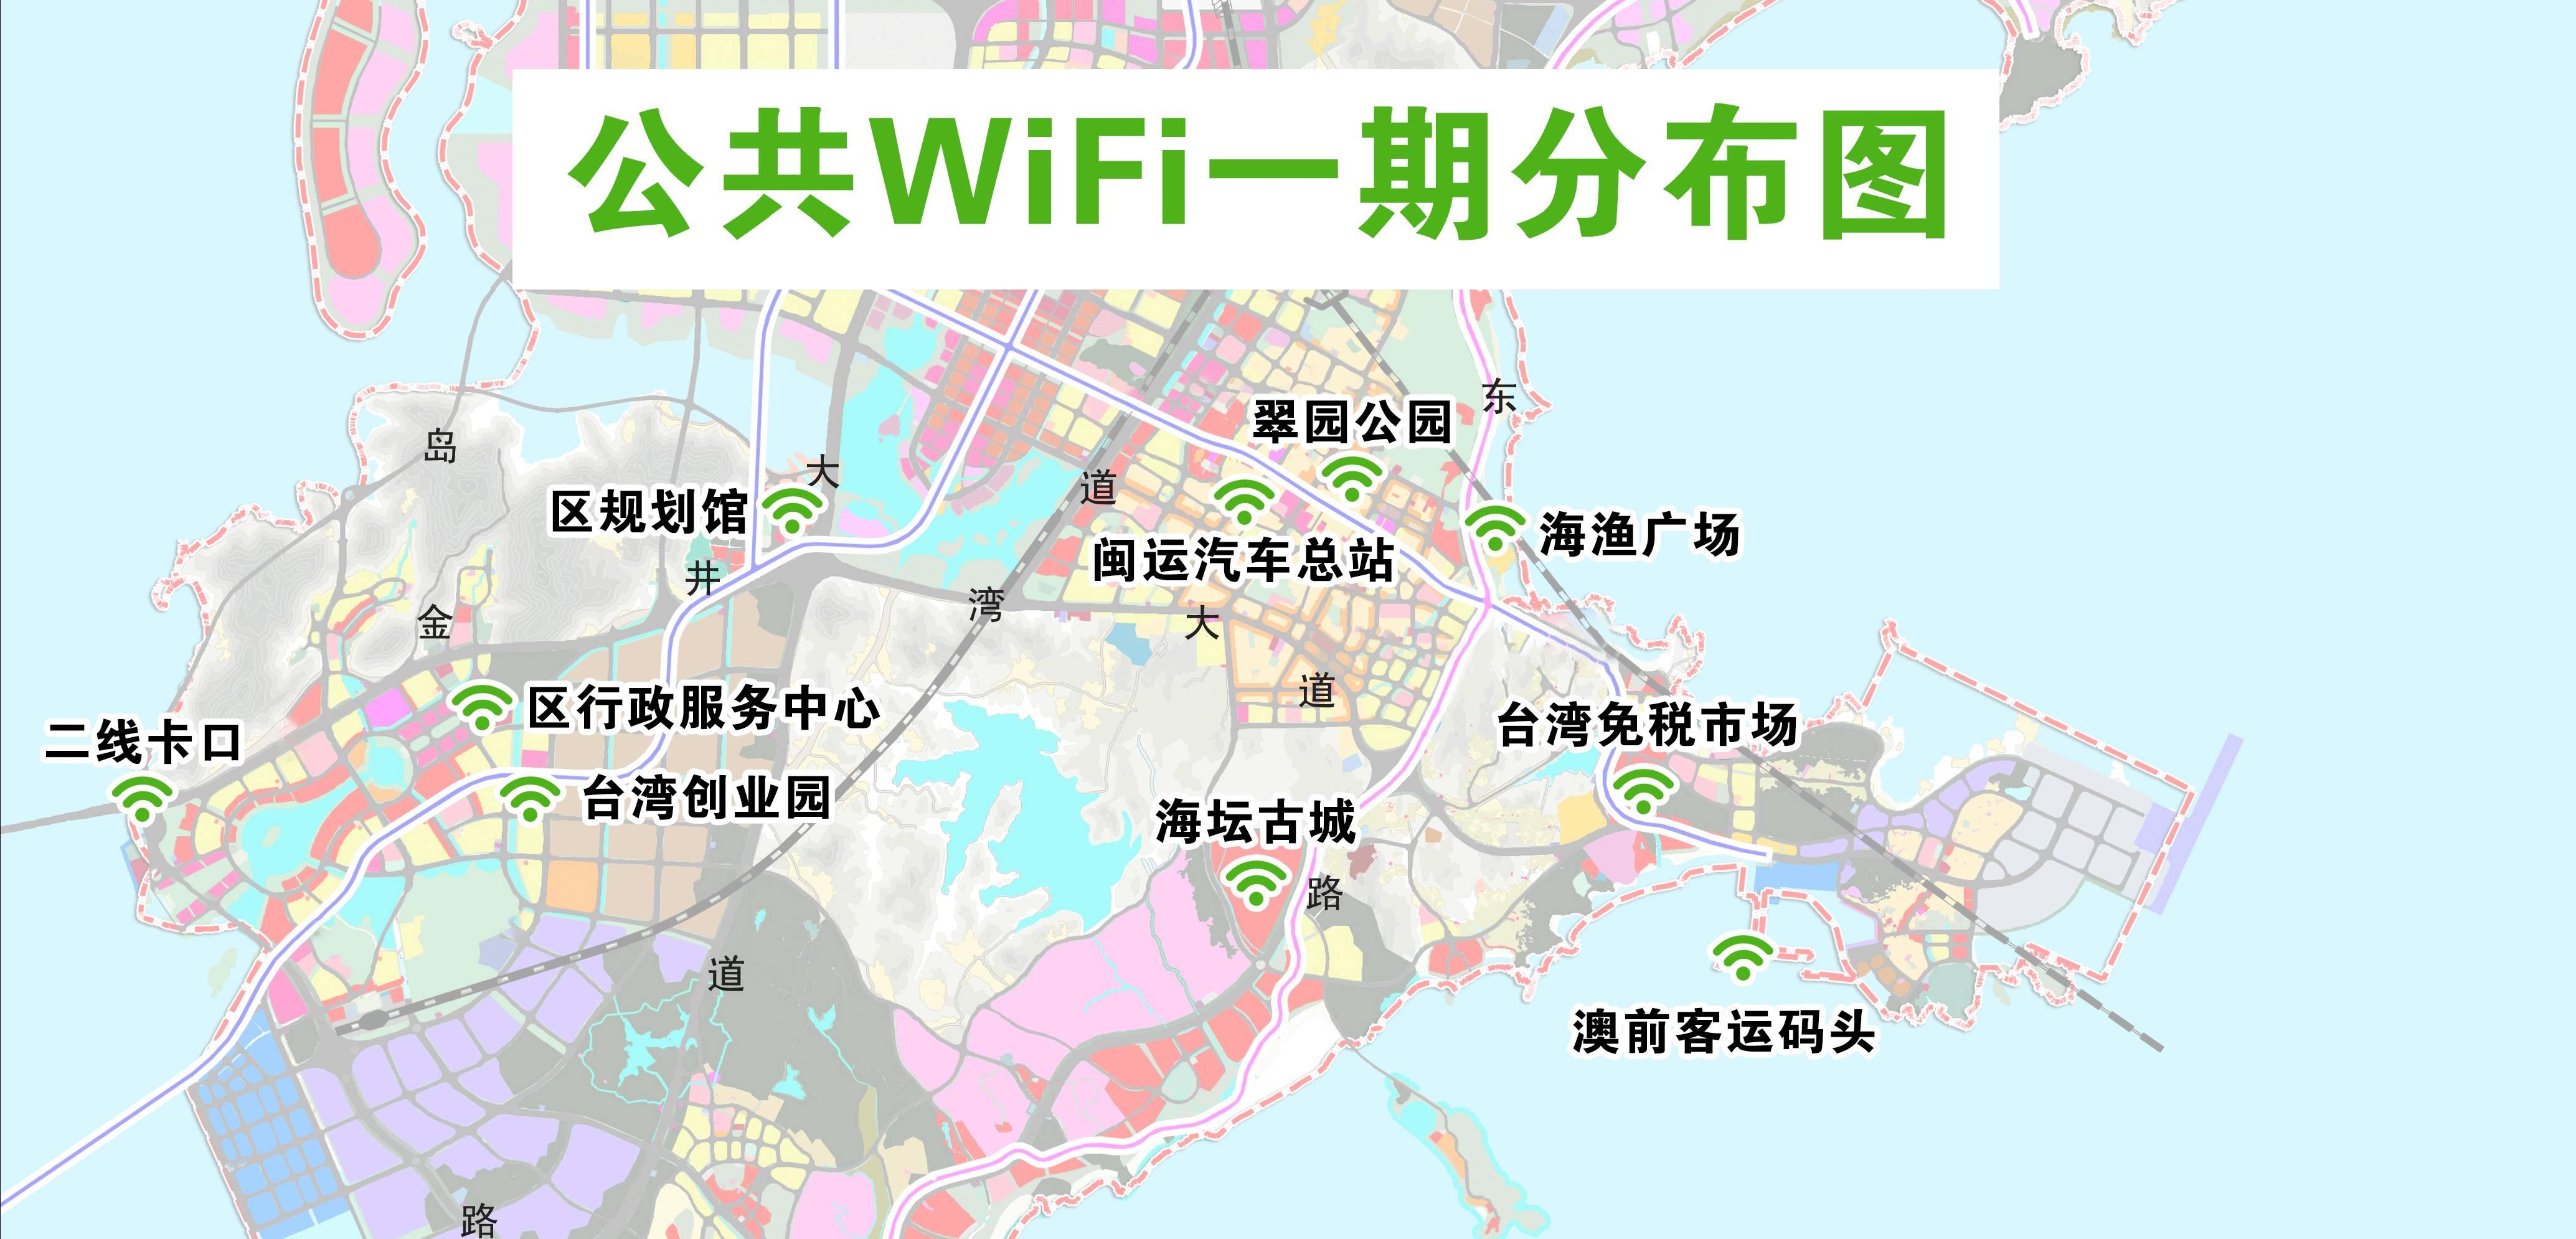 平潭公交将有免费WiFi 全区共新增20个分布点